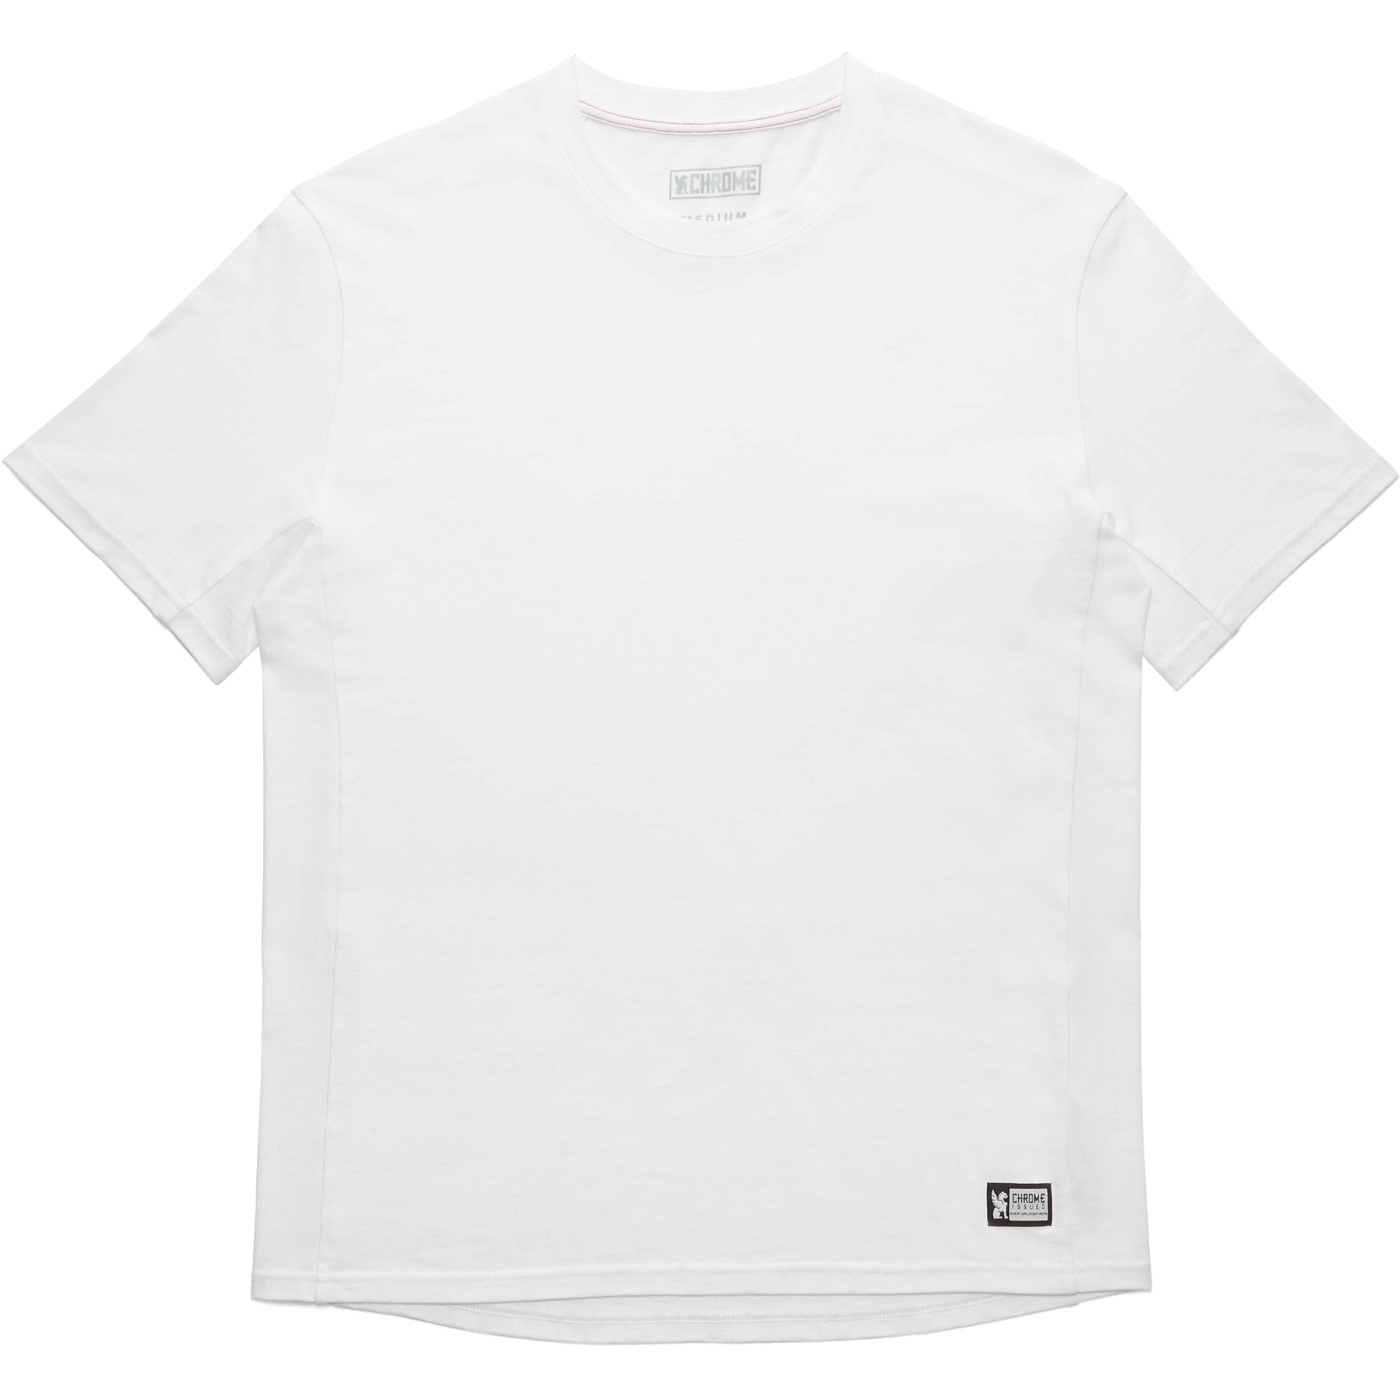 Foto de CHROME Issued Short Sleeve Tee Camiseta - White